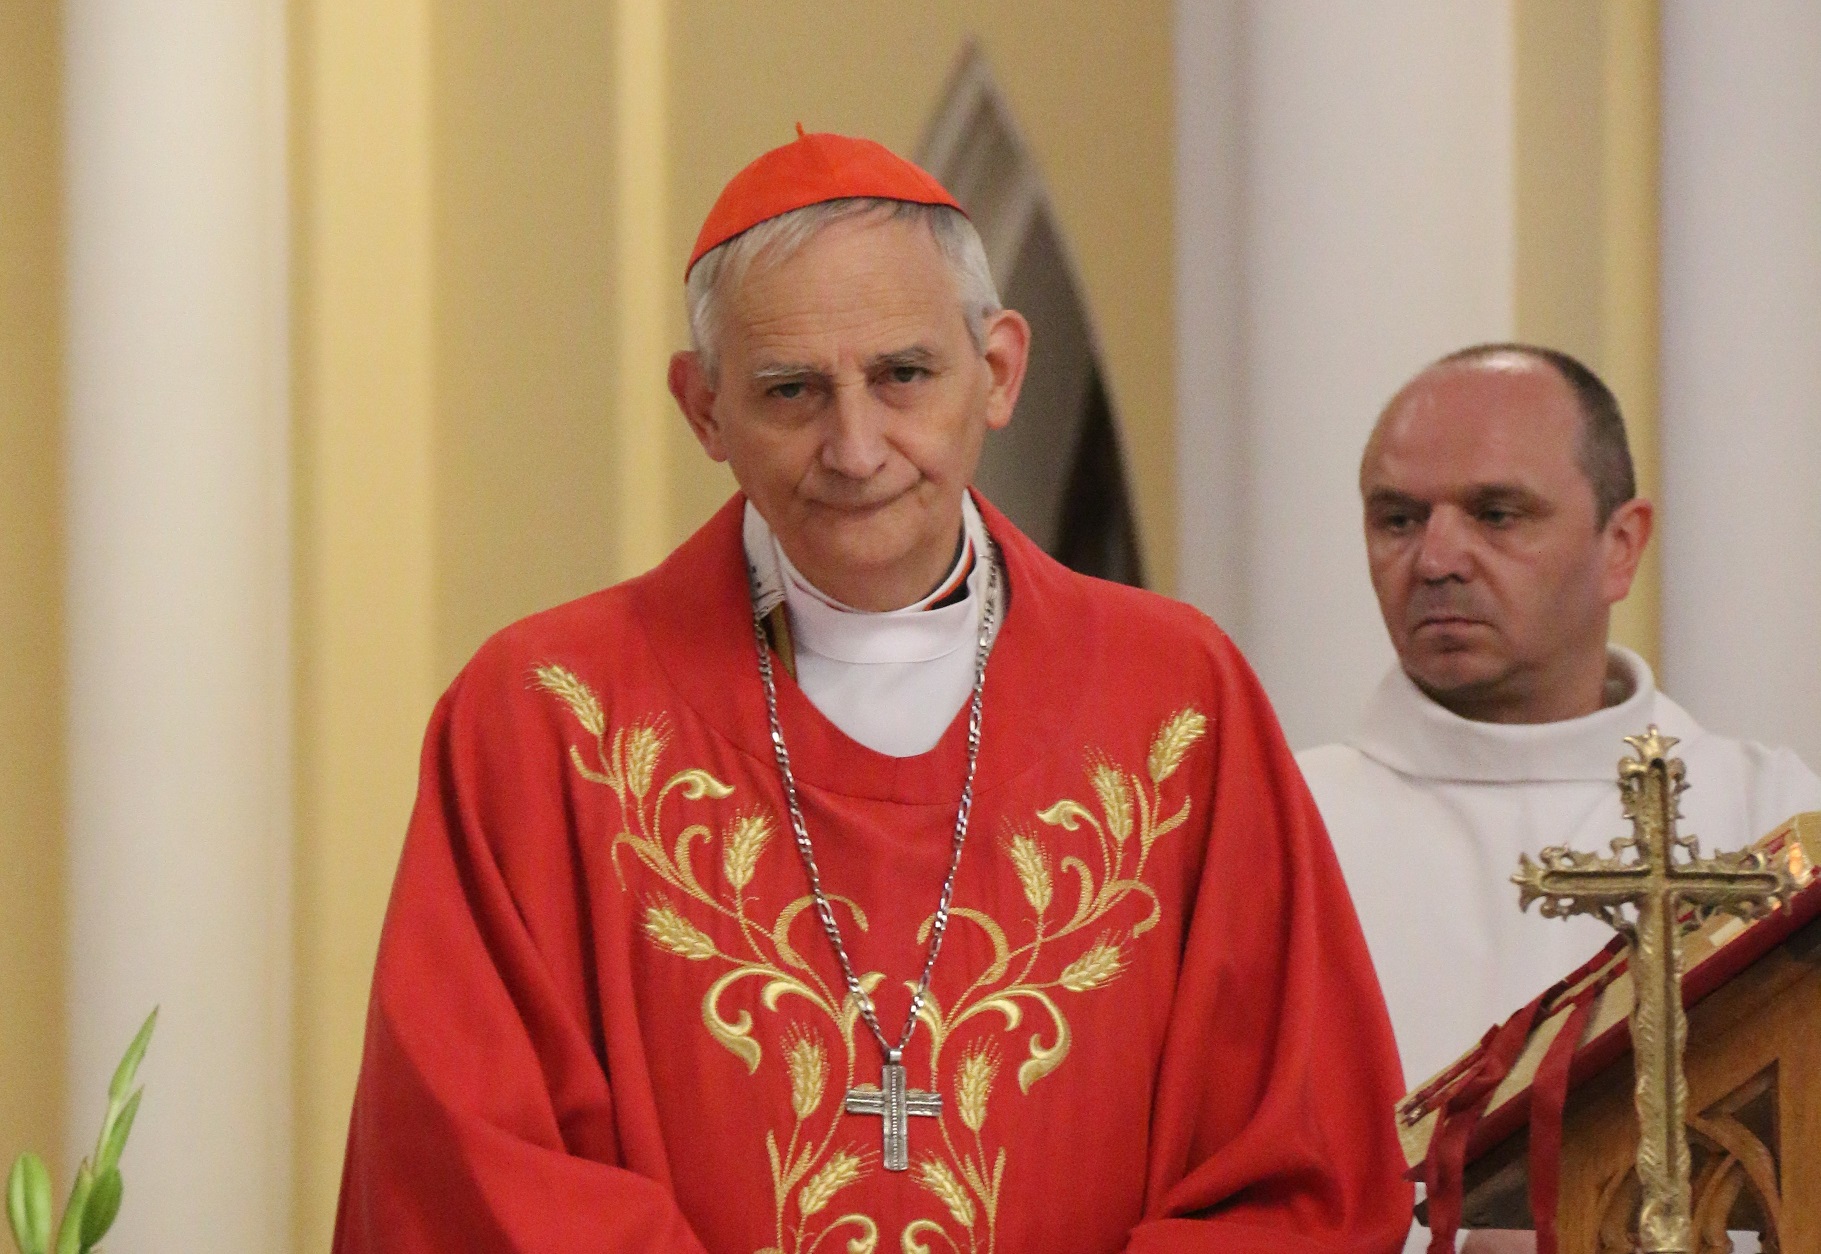 Кардинал Дзуппи заявил, что у Ватикана нет своего плана для начала переговоров по Украине